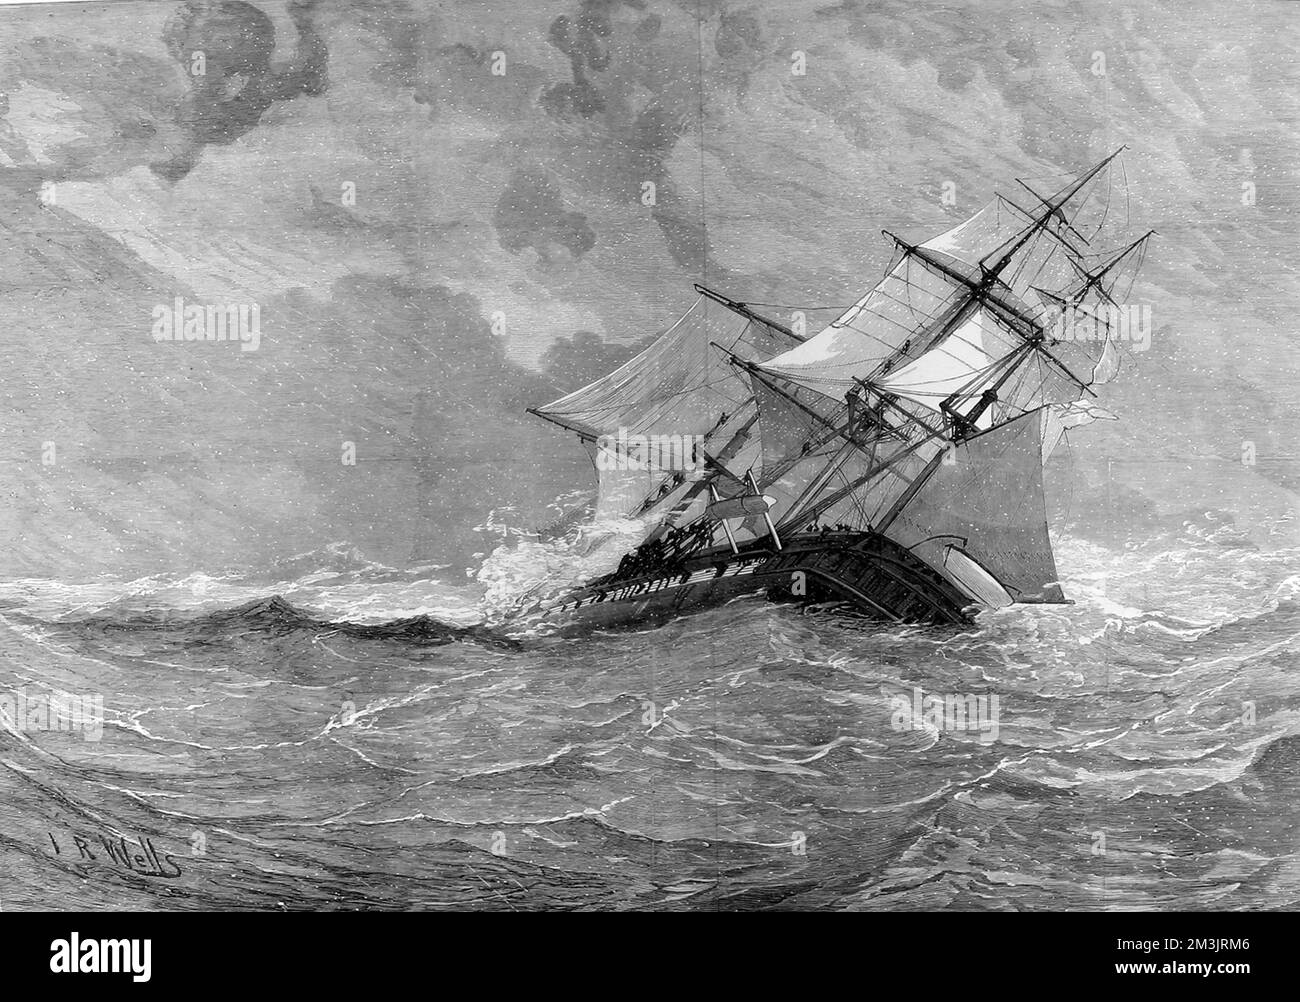 Der Verlust von H.M.S Eurydice: Bild aus einer Skizze von zwei Überlebenden. Das Schiff näherte sich Bonchurch vor der Küste nahe der Isle of Wight, nach seiner Rückkehr von einer Übung auf den Westindischen Inseln. Zwanzig Minuten später erwischte ein heftiger Sturm das Schiff unwissentlich. Der Sturm, der nur zehn Minuten dauerte, verschlamm das Schiff und tötete 300 Besatzungen und Passagiere. Stockfoto